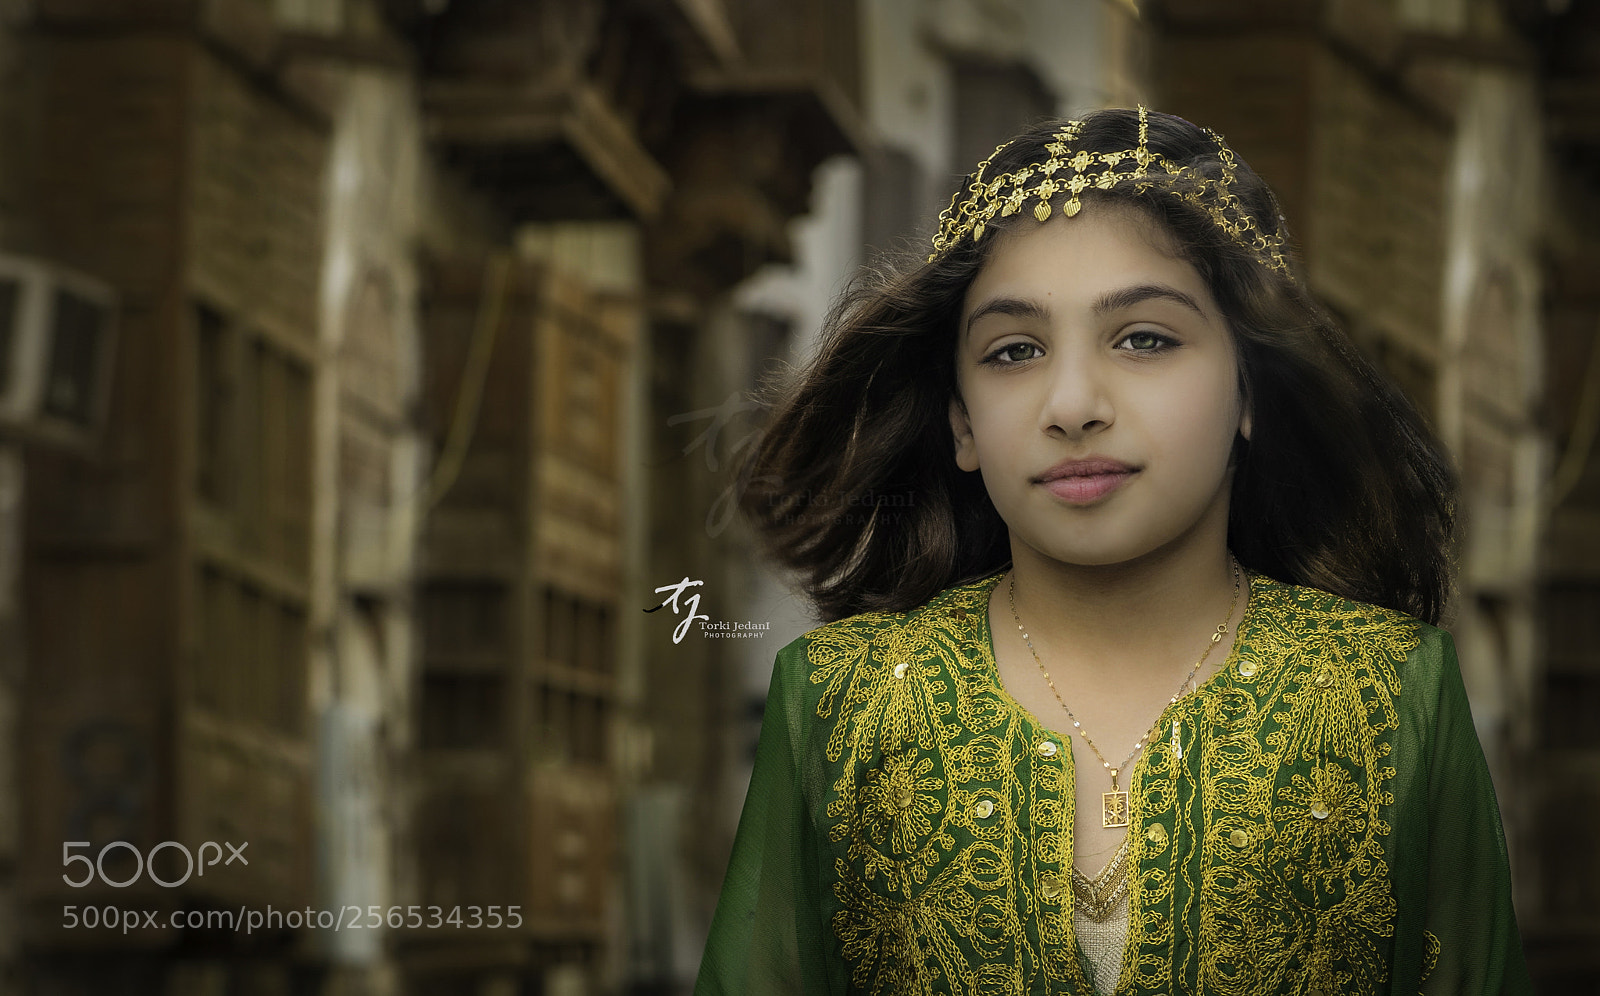 Nikon D750 sample photo. Jeddah city girl photography